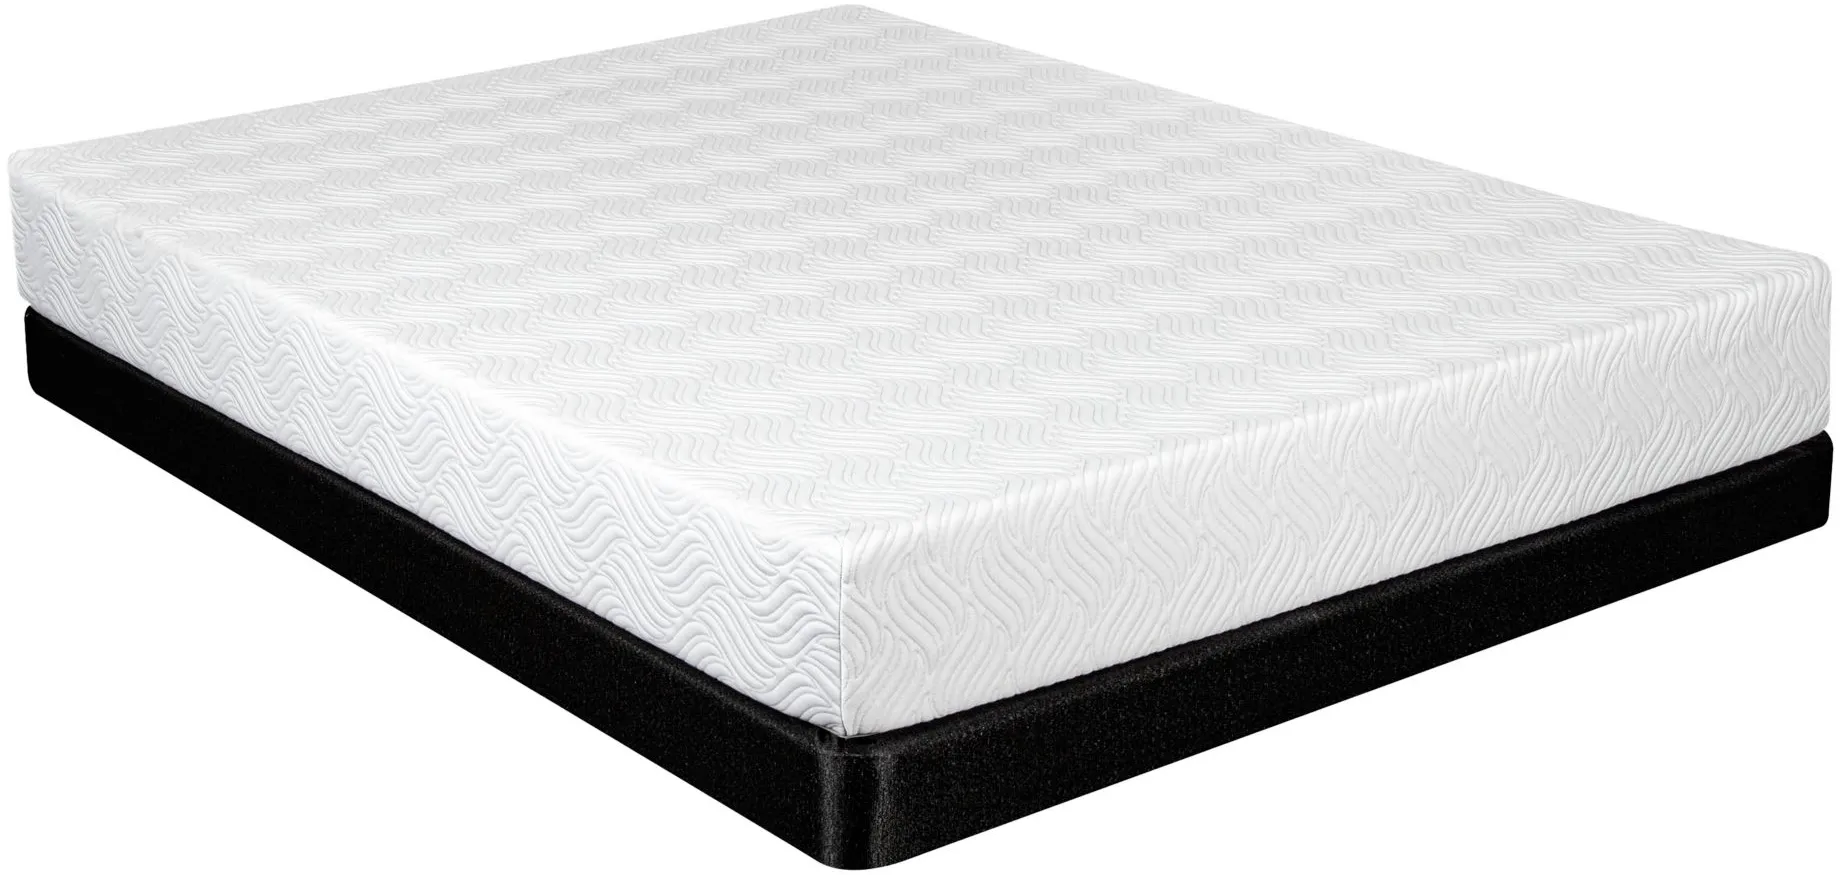 bellanest royal medium memory foam queen mattress reviews